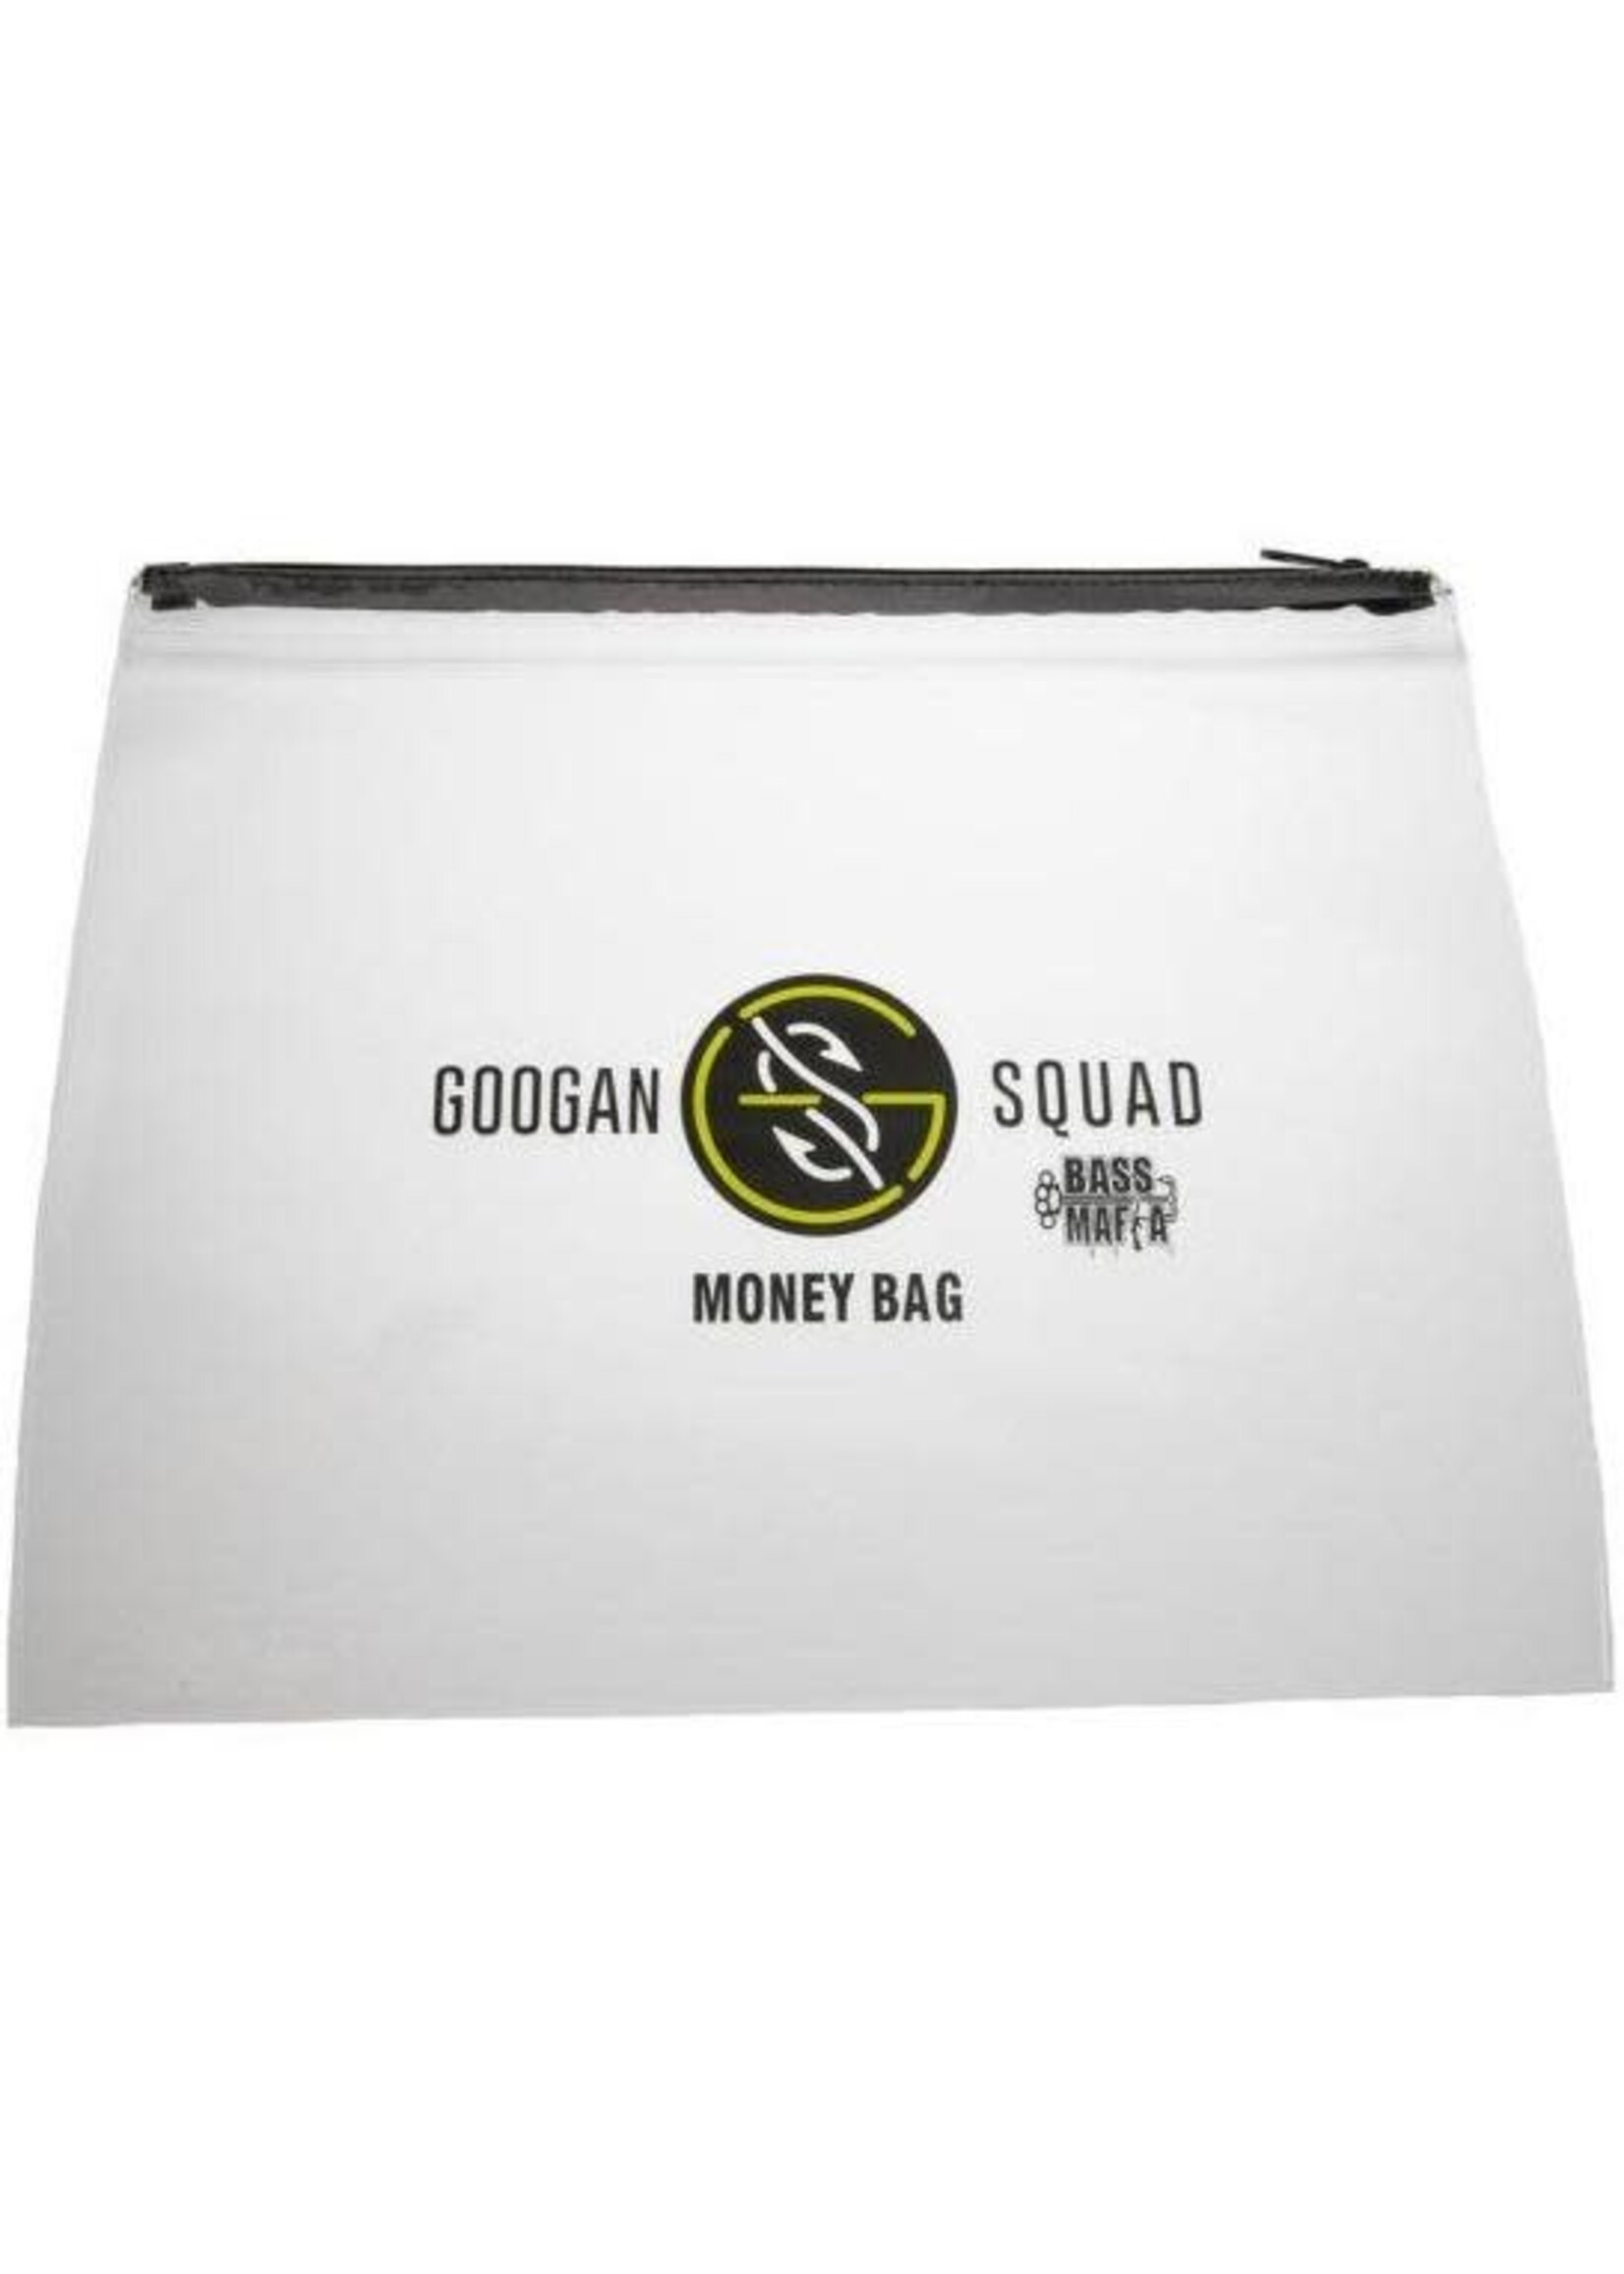 Googan Baits Googan Squad Bass Mafia Money Bag